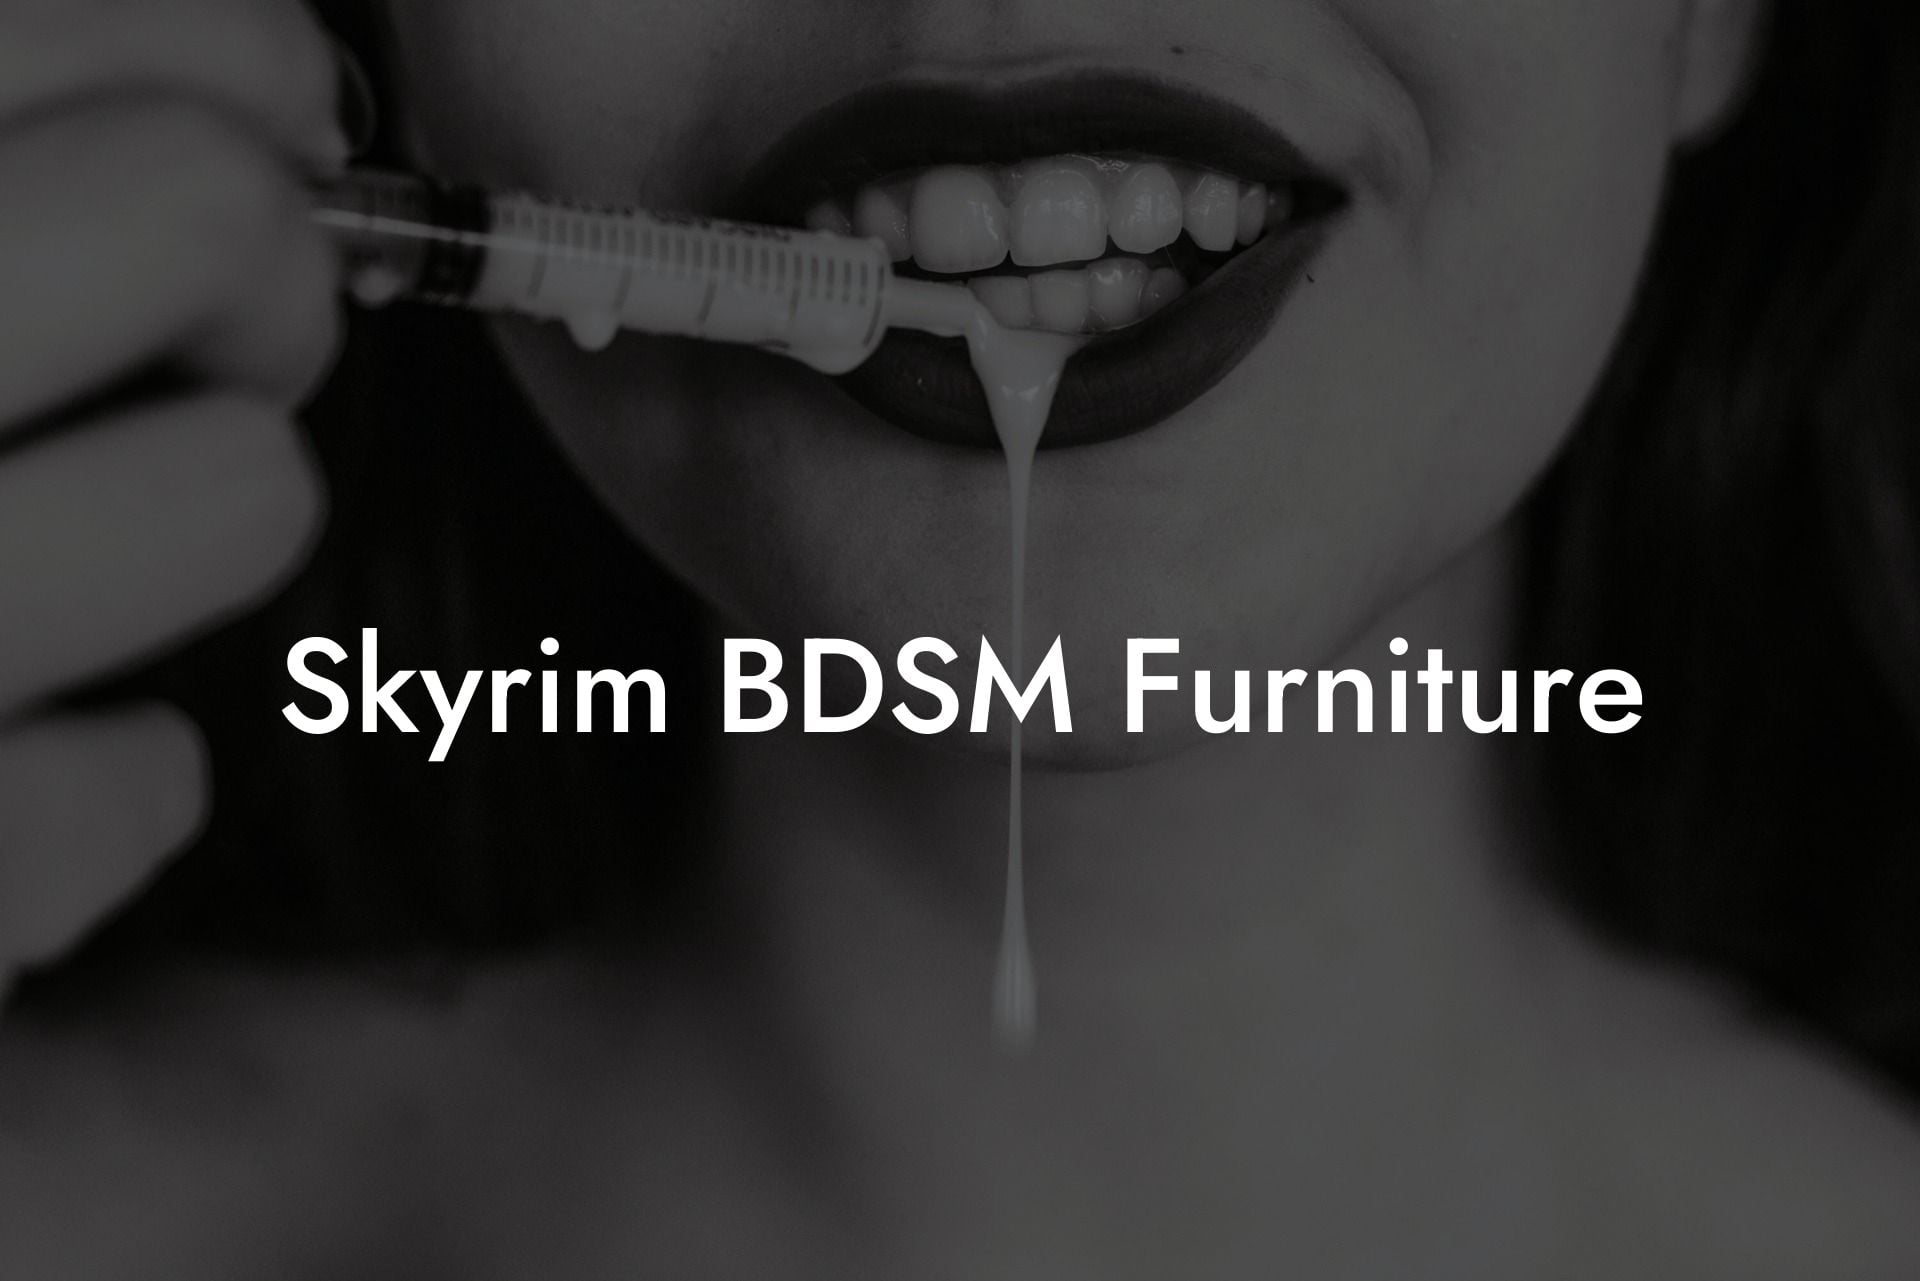 Skyrim BDSM Furniture